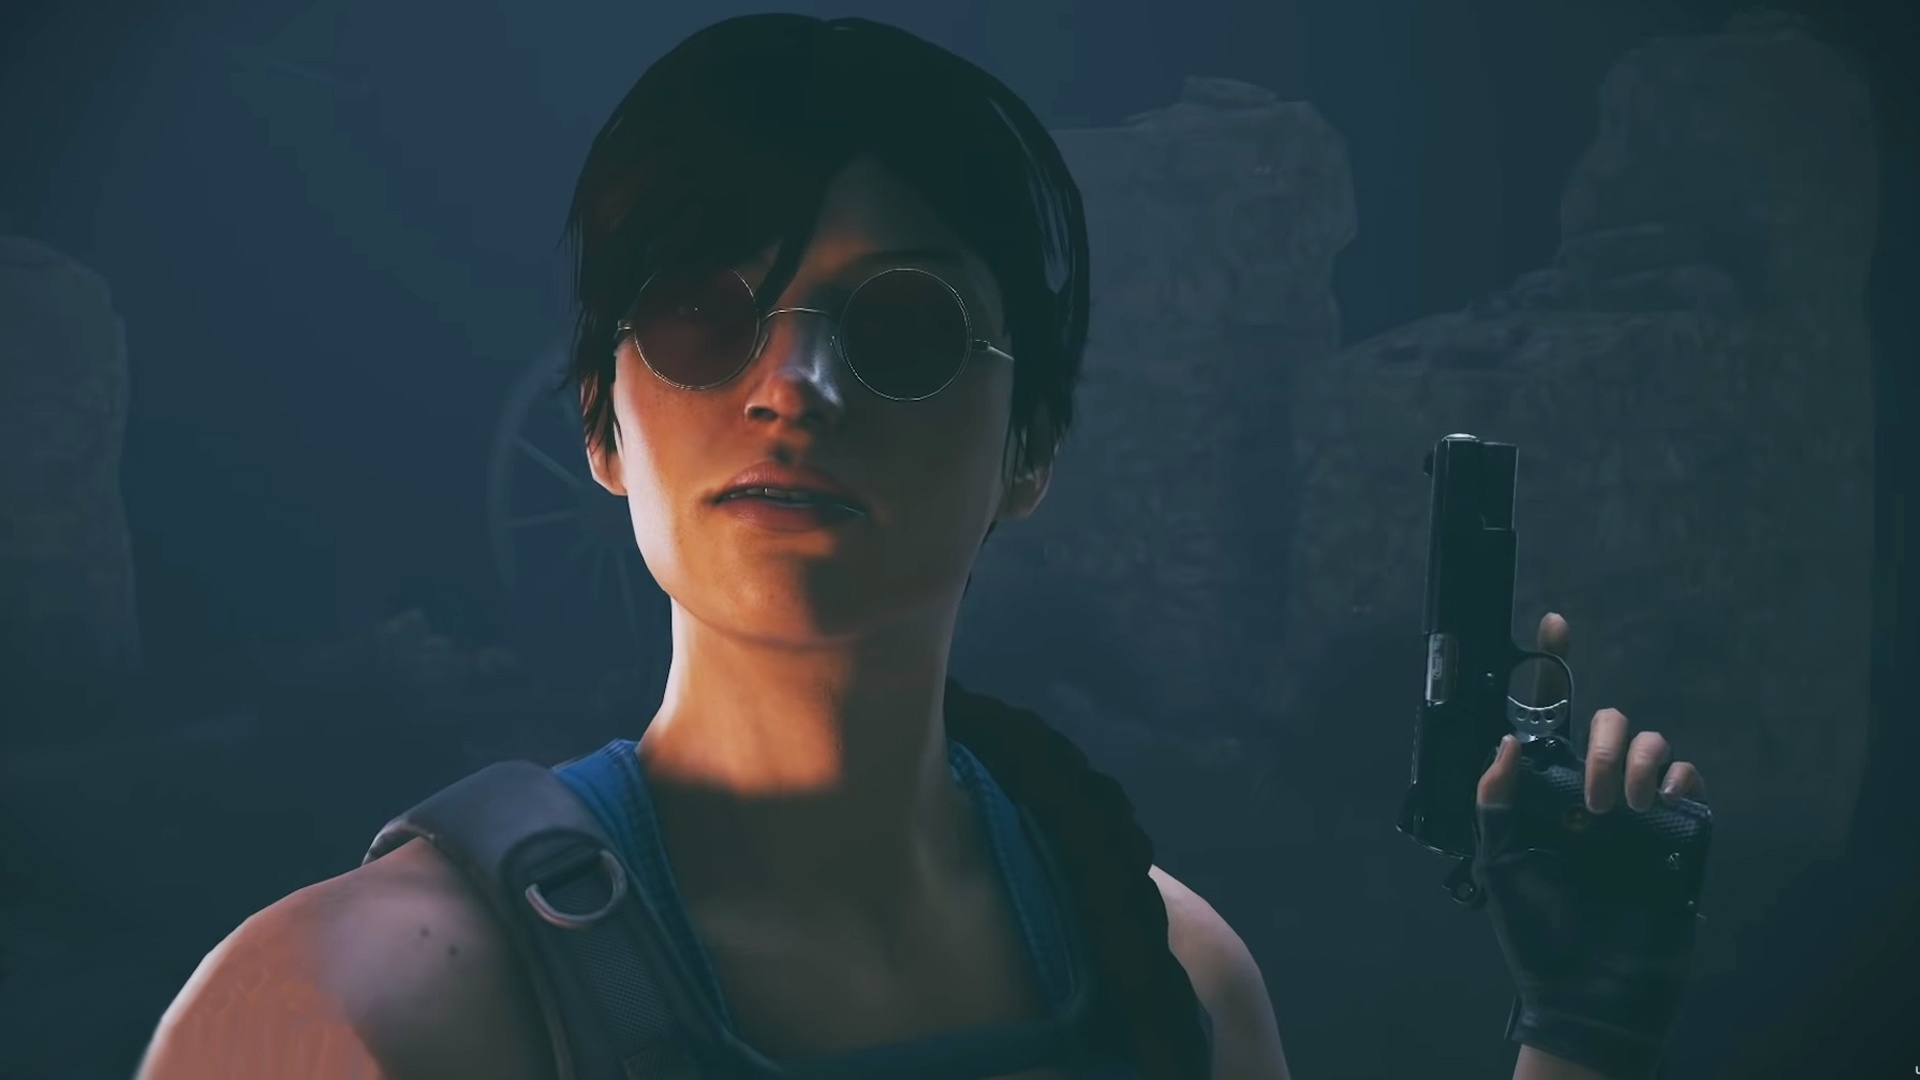 Lara Croft en Rainbow Six: Siege, una skin que no acaba de 